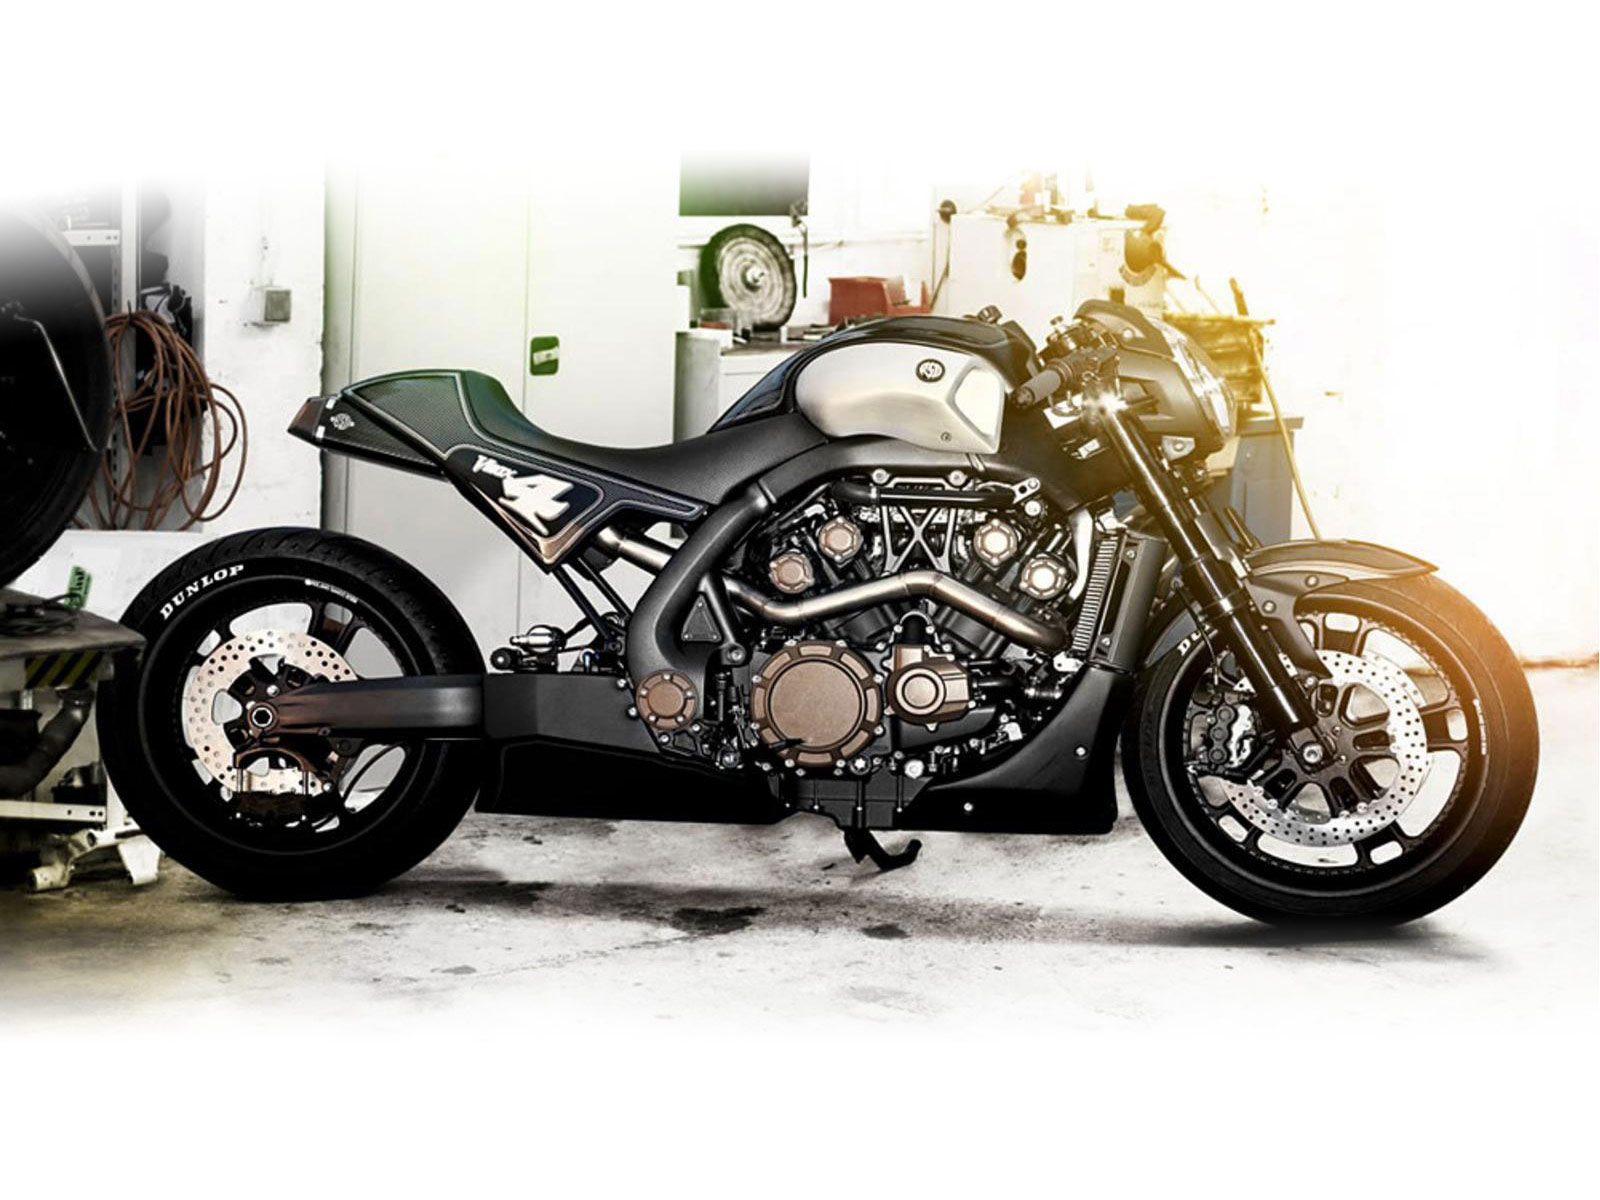 Kumpulan Gambar Motor Drag X Ride Terbaru Kinyis Motor